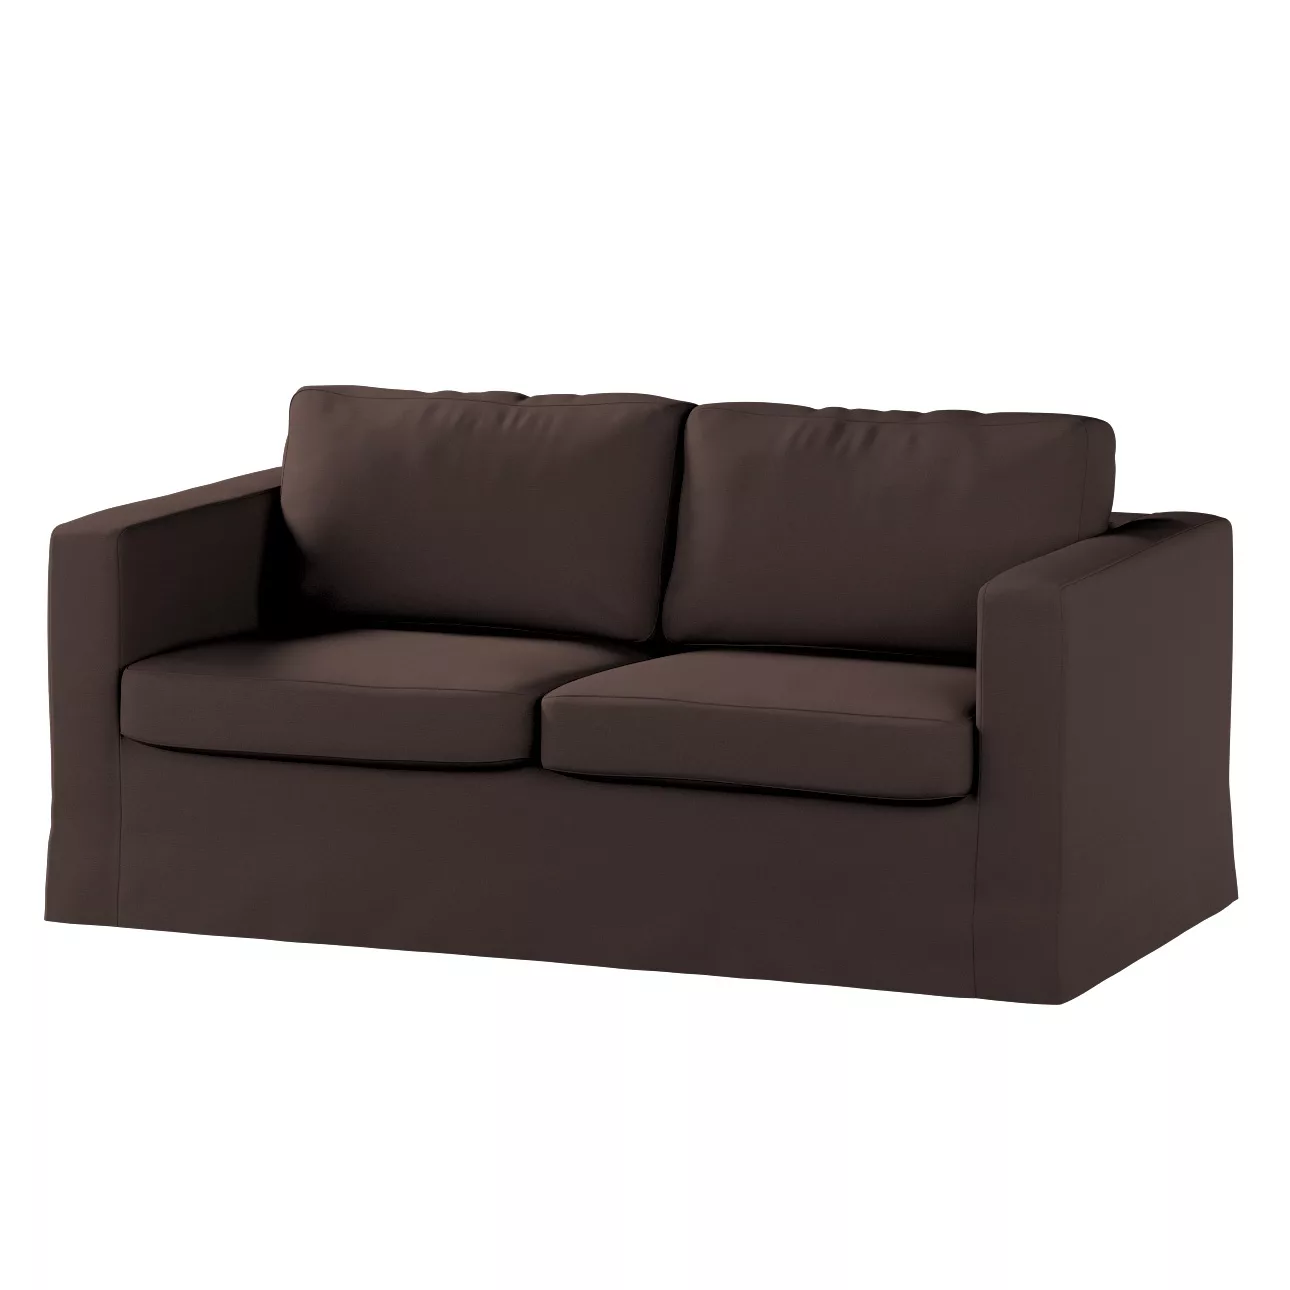 Bezug für Karlstad 2-Sitzer Sofa nicht ausklappbar, lang, Kaffee, Sofahusse günstig online kaufen